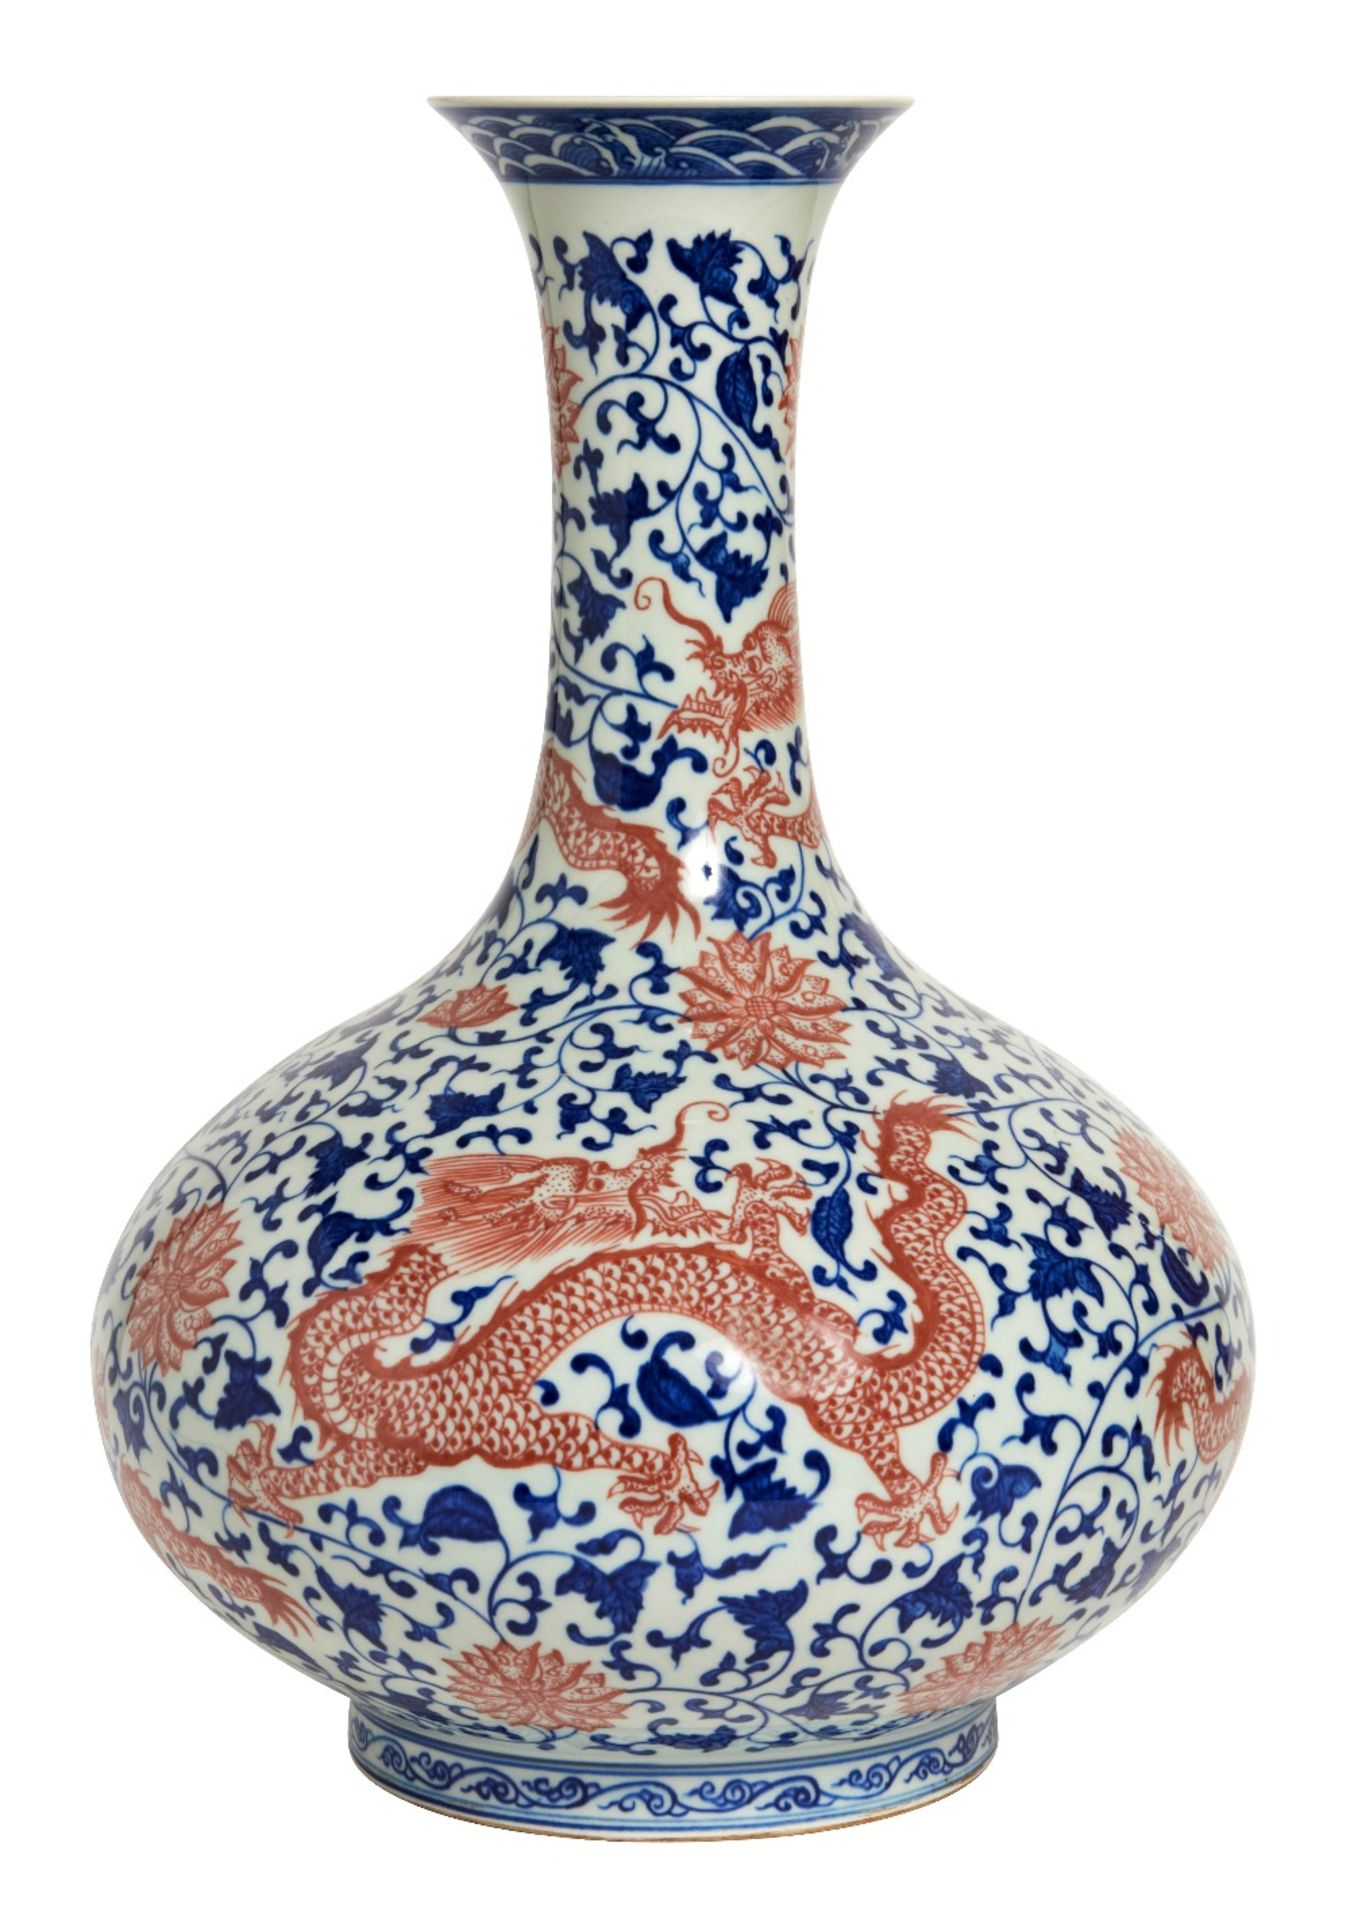 CHINESE VASE, 20TH CENTURY  Época de la República. En porcelana policromada con bestiario, 45 cm.